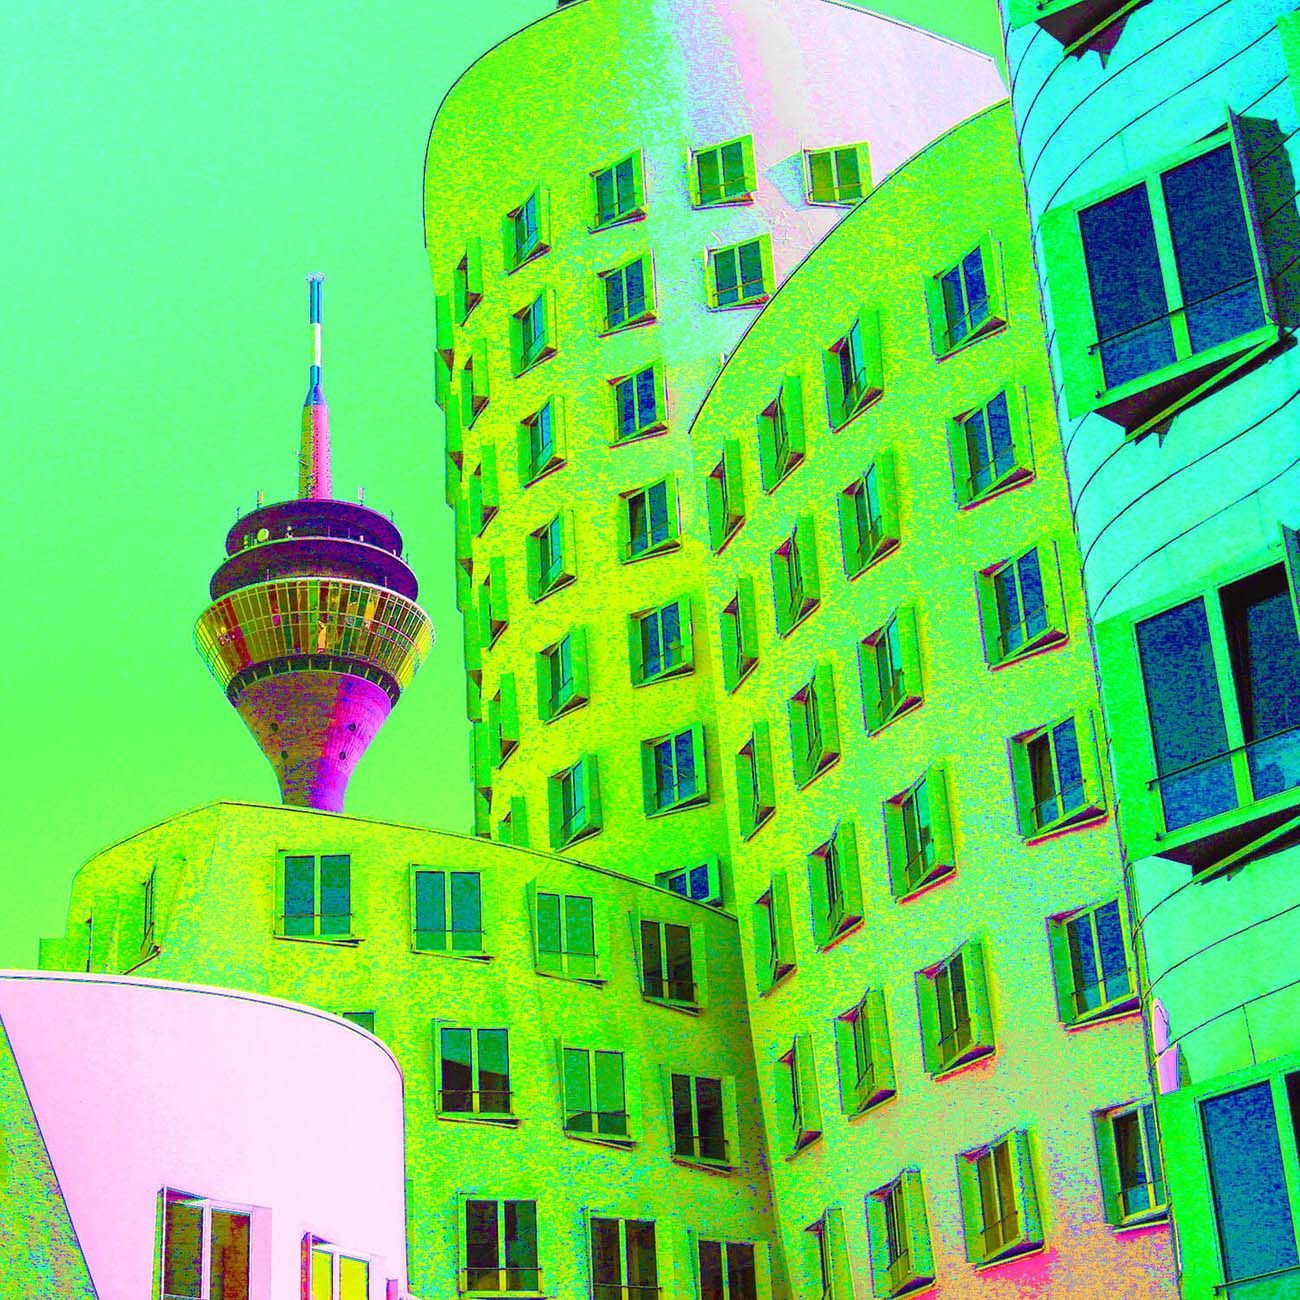 Knalliges Popart-Bild vom Düsseldorfer MedienHafen. Im Vordergrund sind die Gehrybauten in knallgrün gefärbt und im Hintergrund in pink der Rheinturm zu sehen.